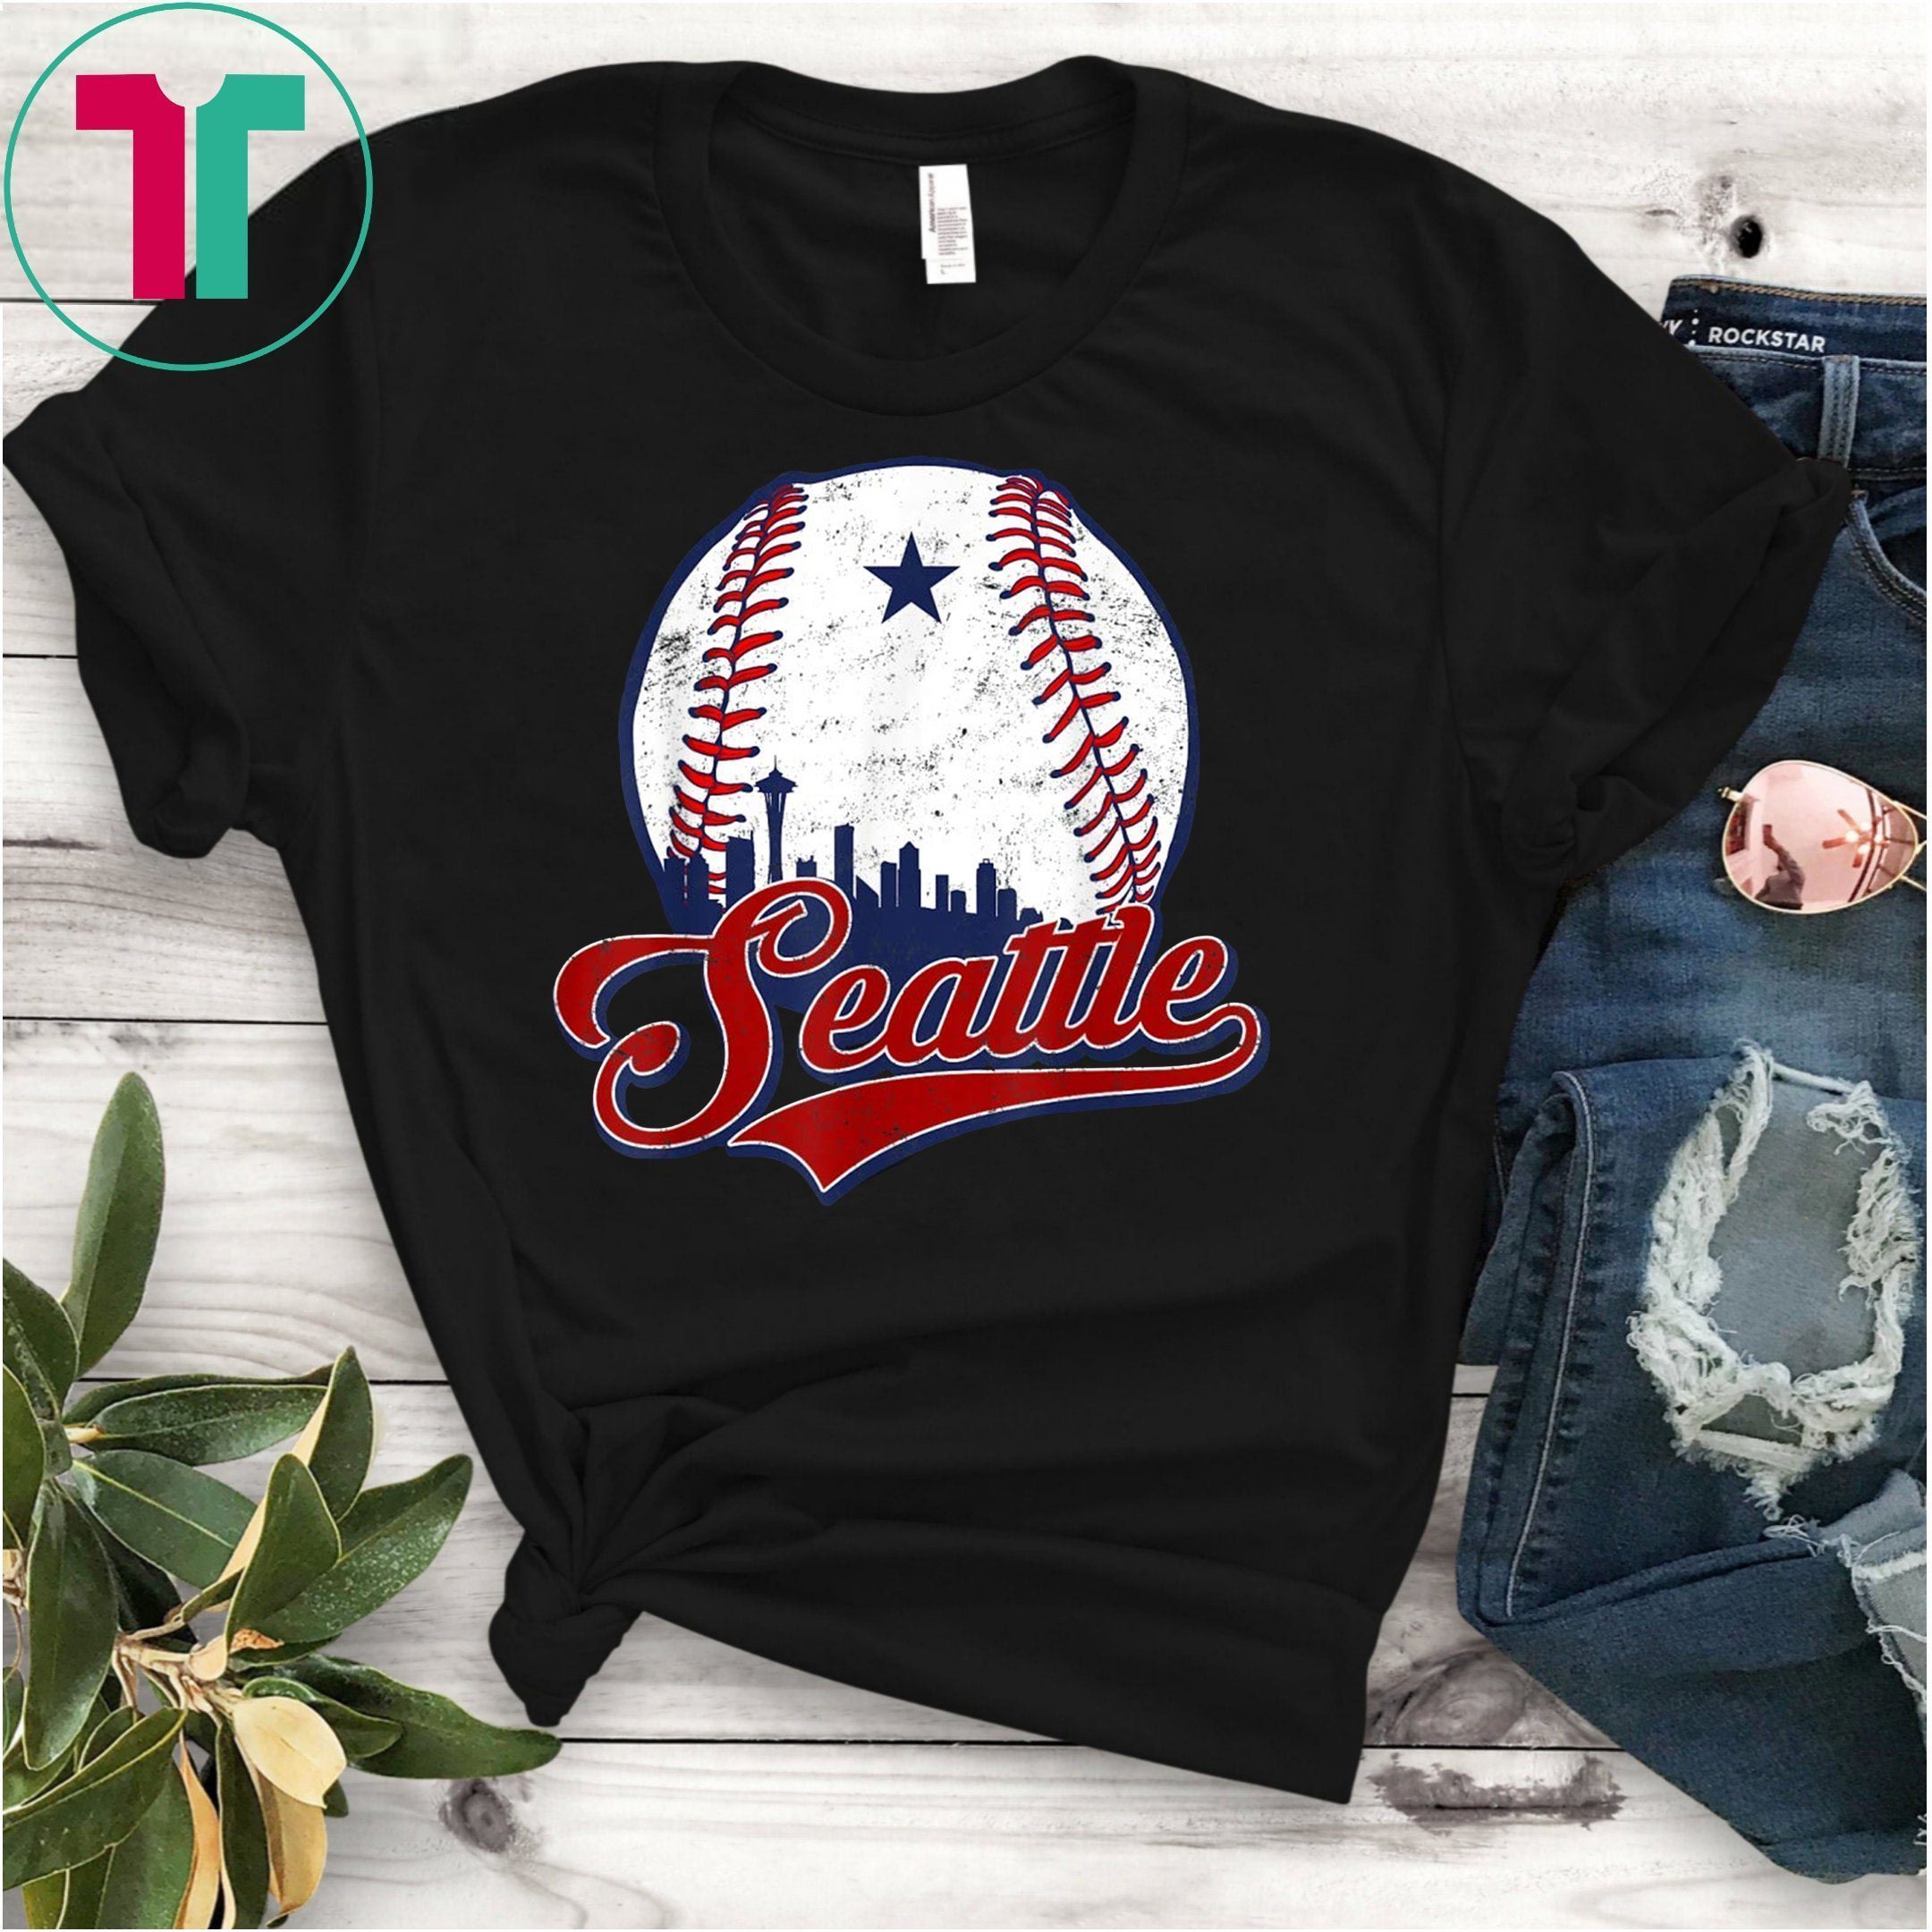 washington baseball shirt